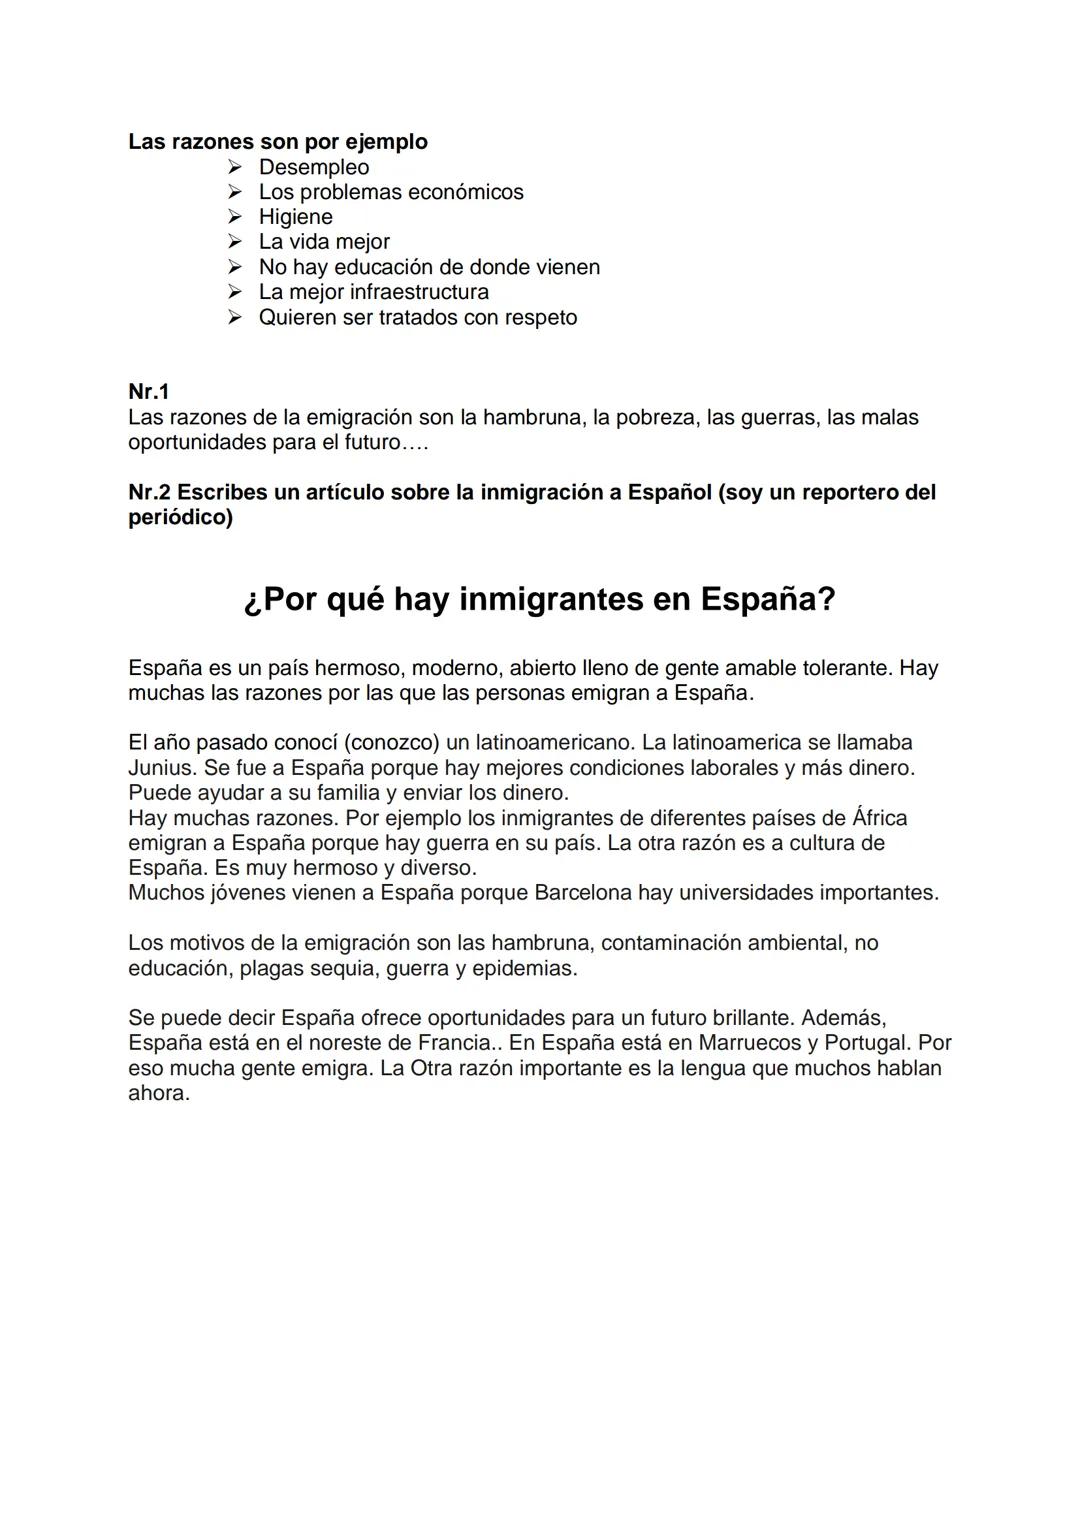 M1 Dos estadísticas sobre la inmigración a
España
Nr.1
El tema del primer diagrama es ,,Procedencia de los Immigranten en España. El
diagram